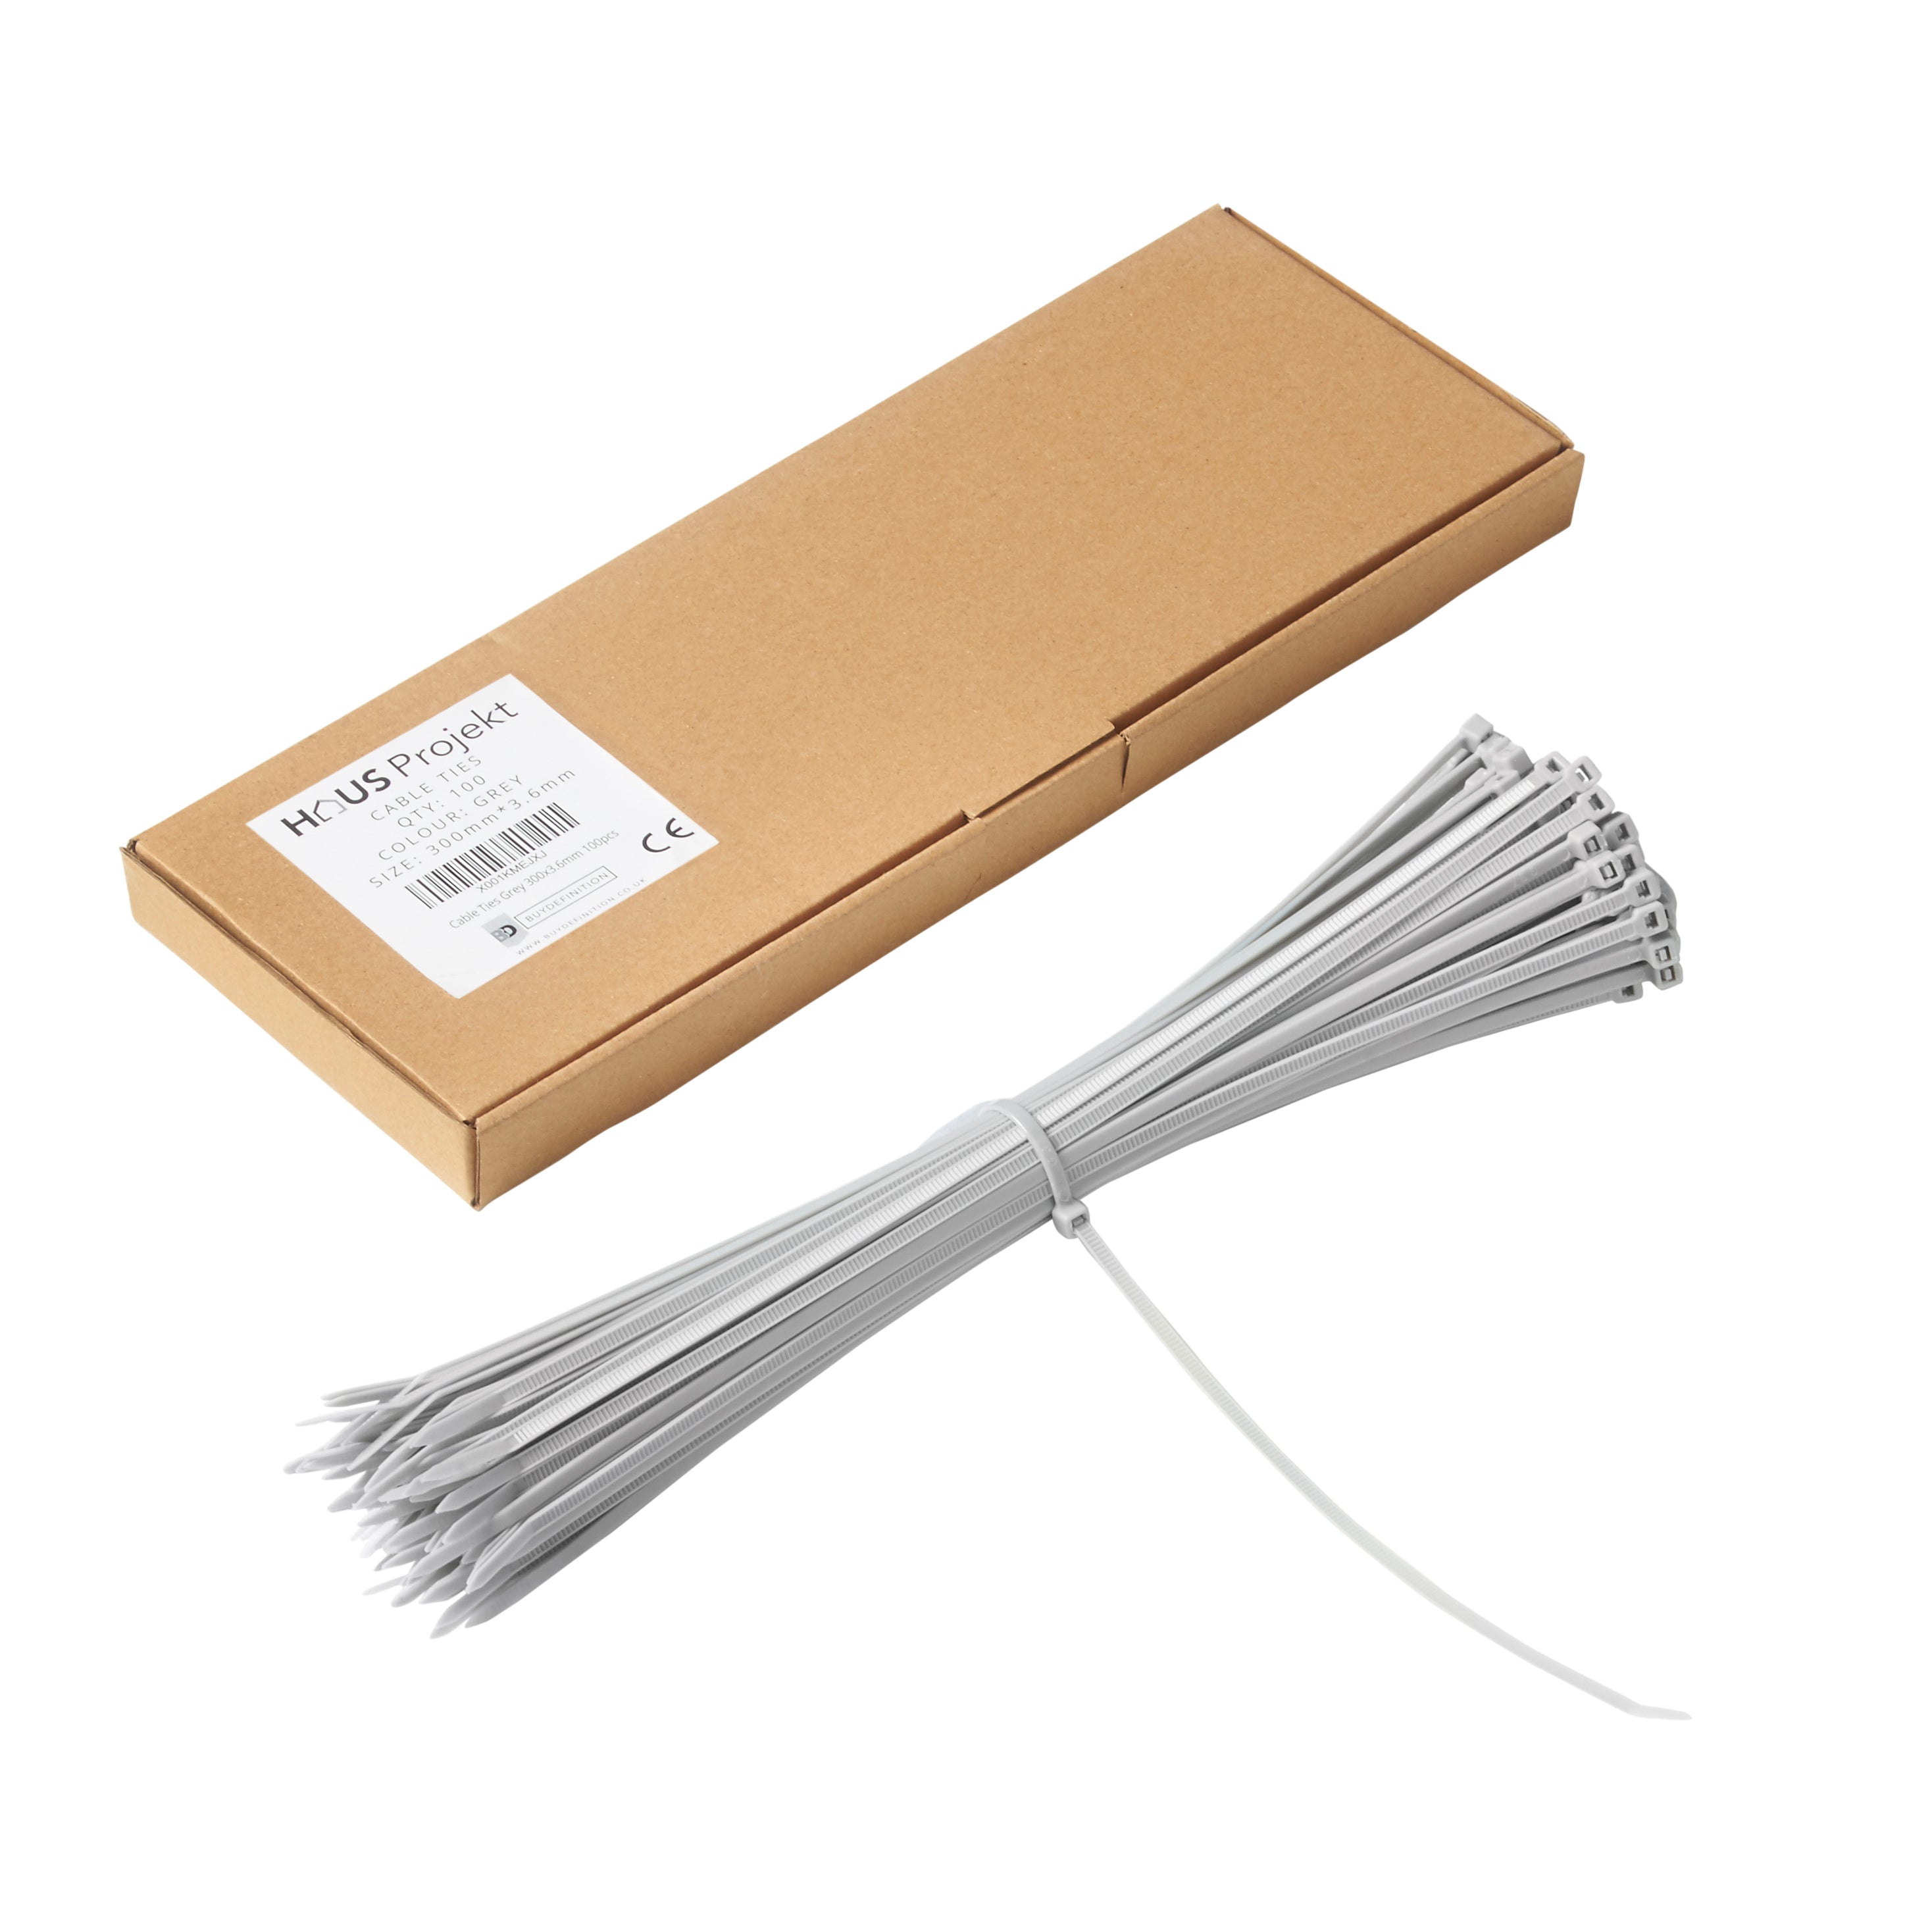 Haus Projekt 300x3.6mm Small Cable Ties, 100pcs Premium Industrial Zip Ties